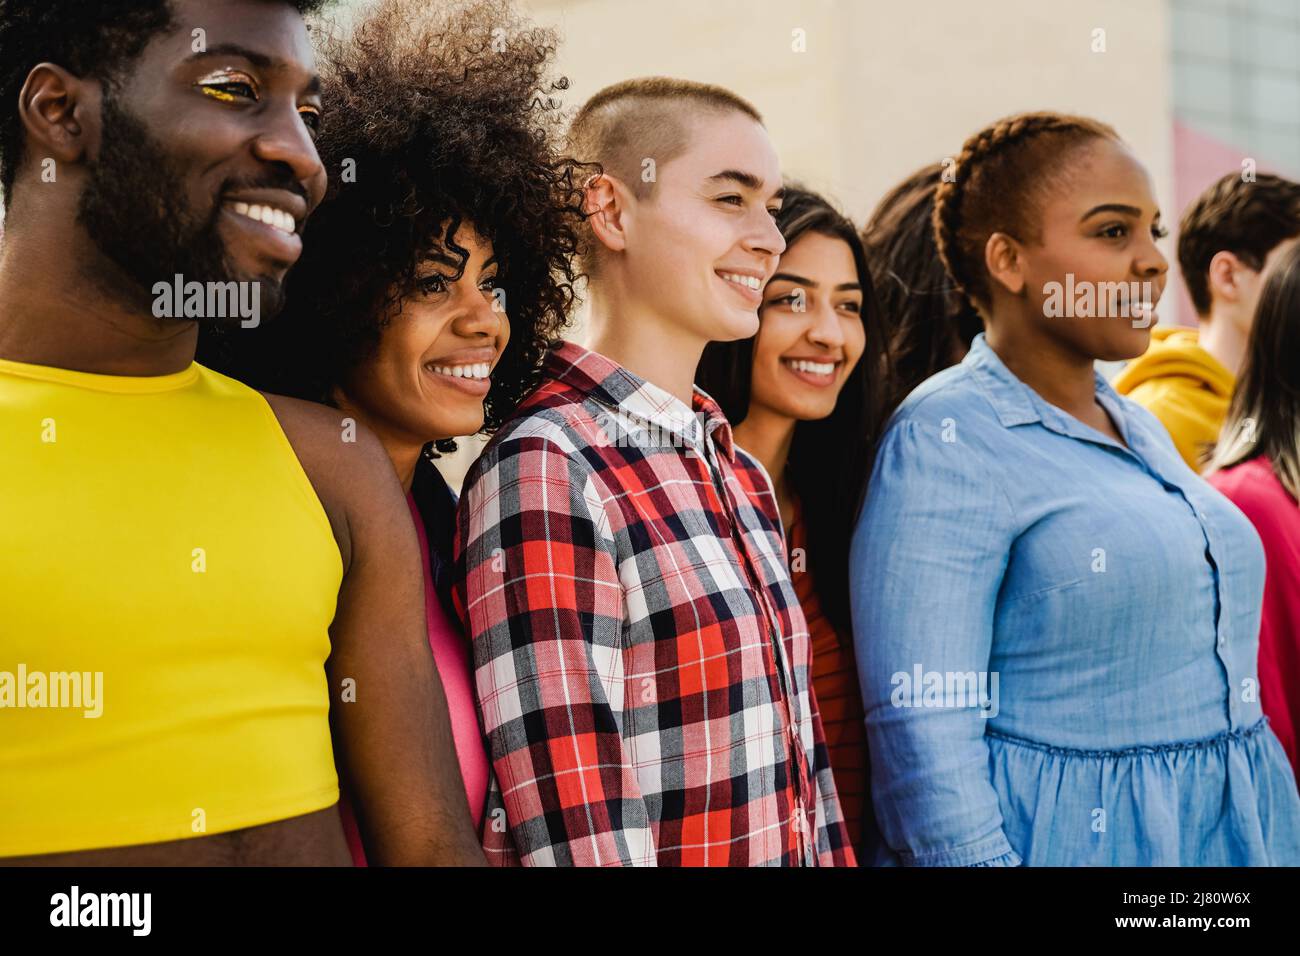 Multiethnische vielfältige Gruppe von Menschen mit Spaß im Freien - Fokus auf afrikanische Mädchen Gesicht - Vielfalt und Jugend Konzept Stockfoto